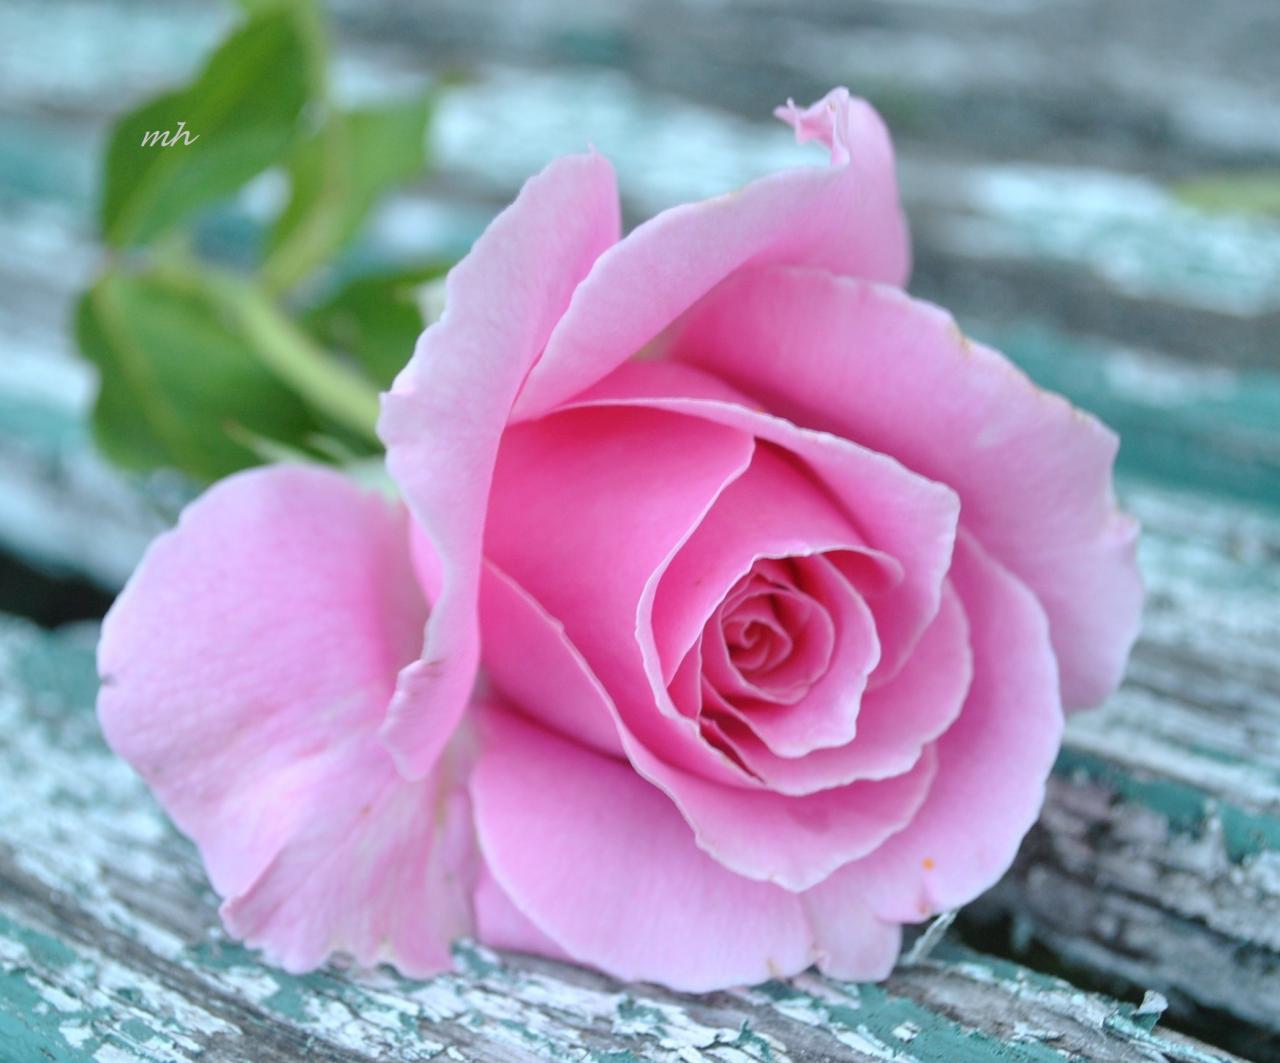 صور وردة جميلة , شاهد جمال الورد في الطبيعه - صور حب